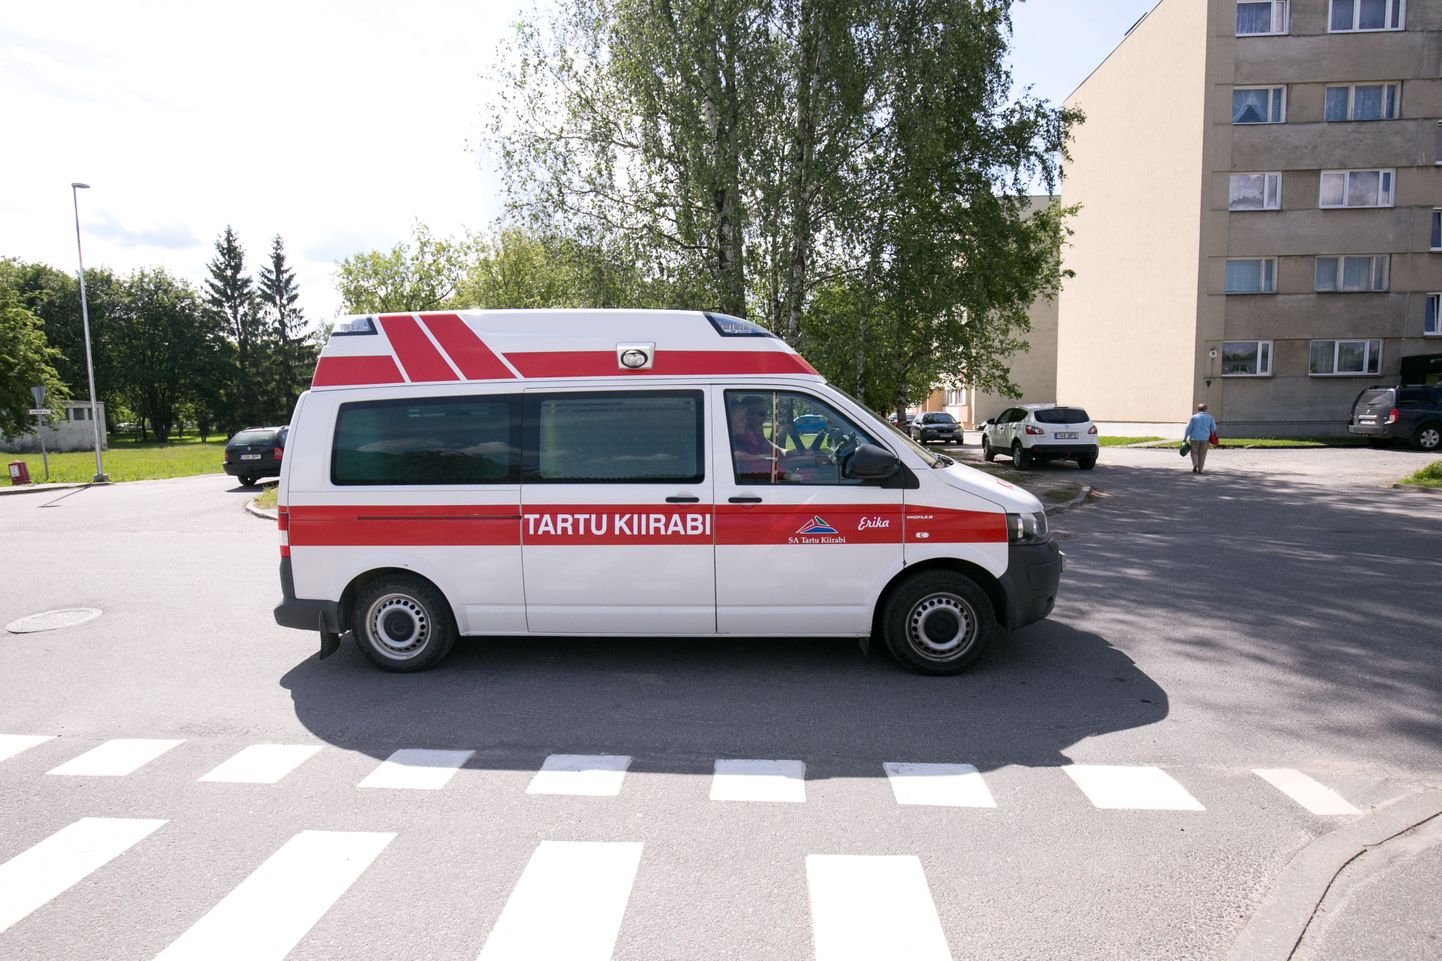 Kiirabi kutsumiseks peetakse kõige turvalisemaks variandiks telefonikõne, kuigi seda saab teha ka smsiga.